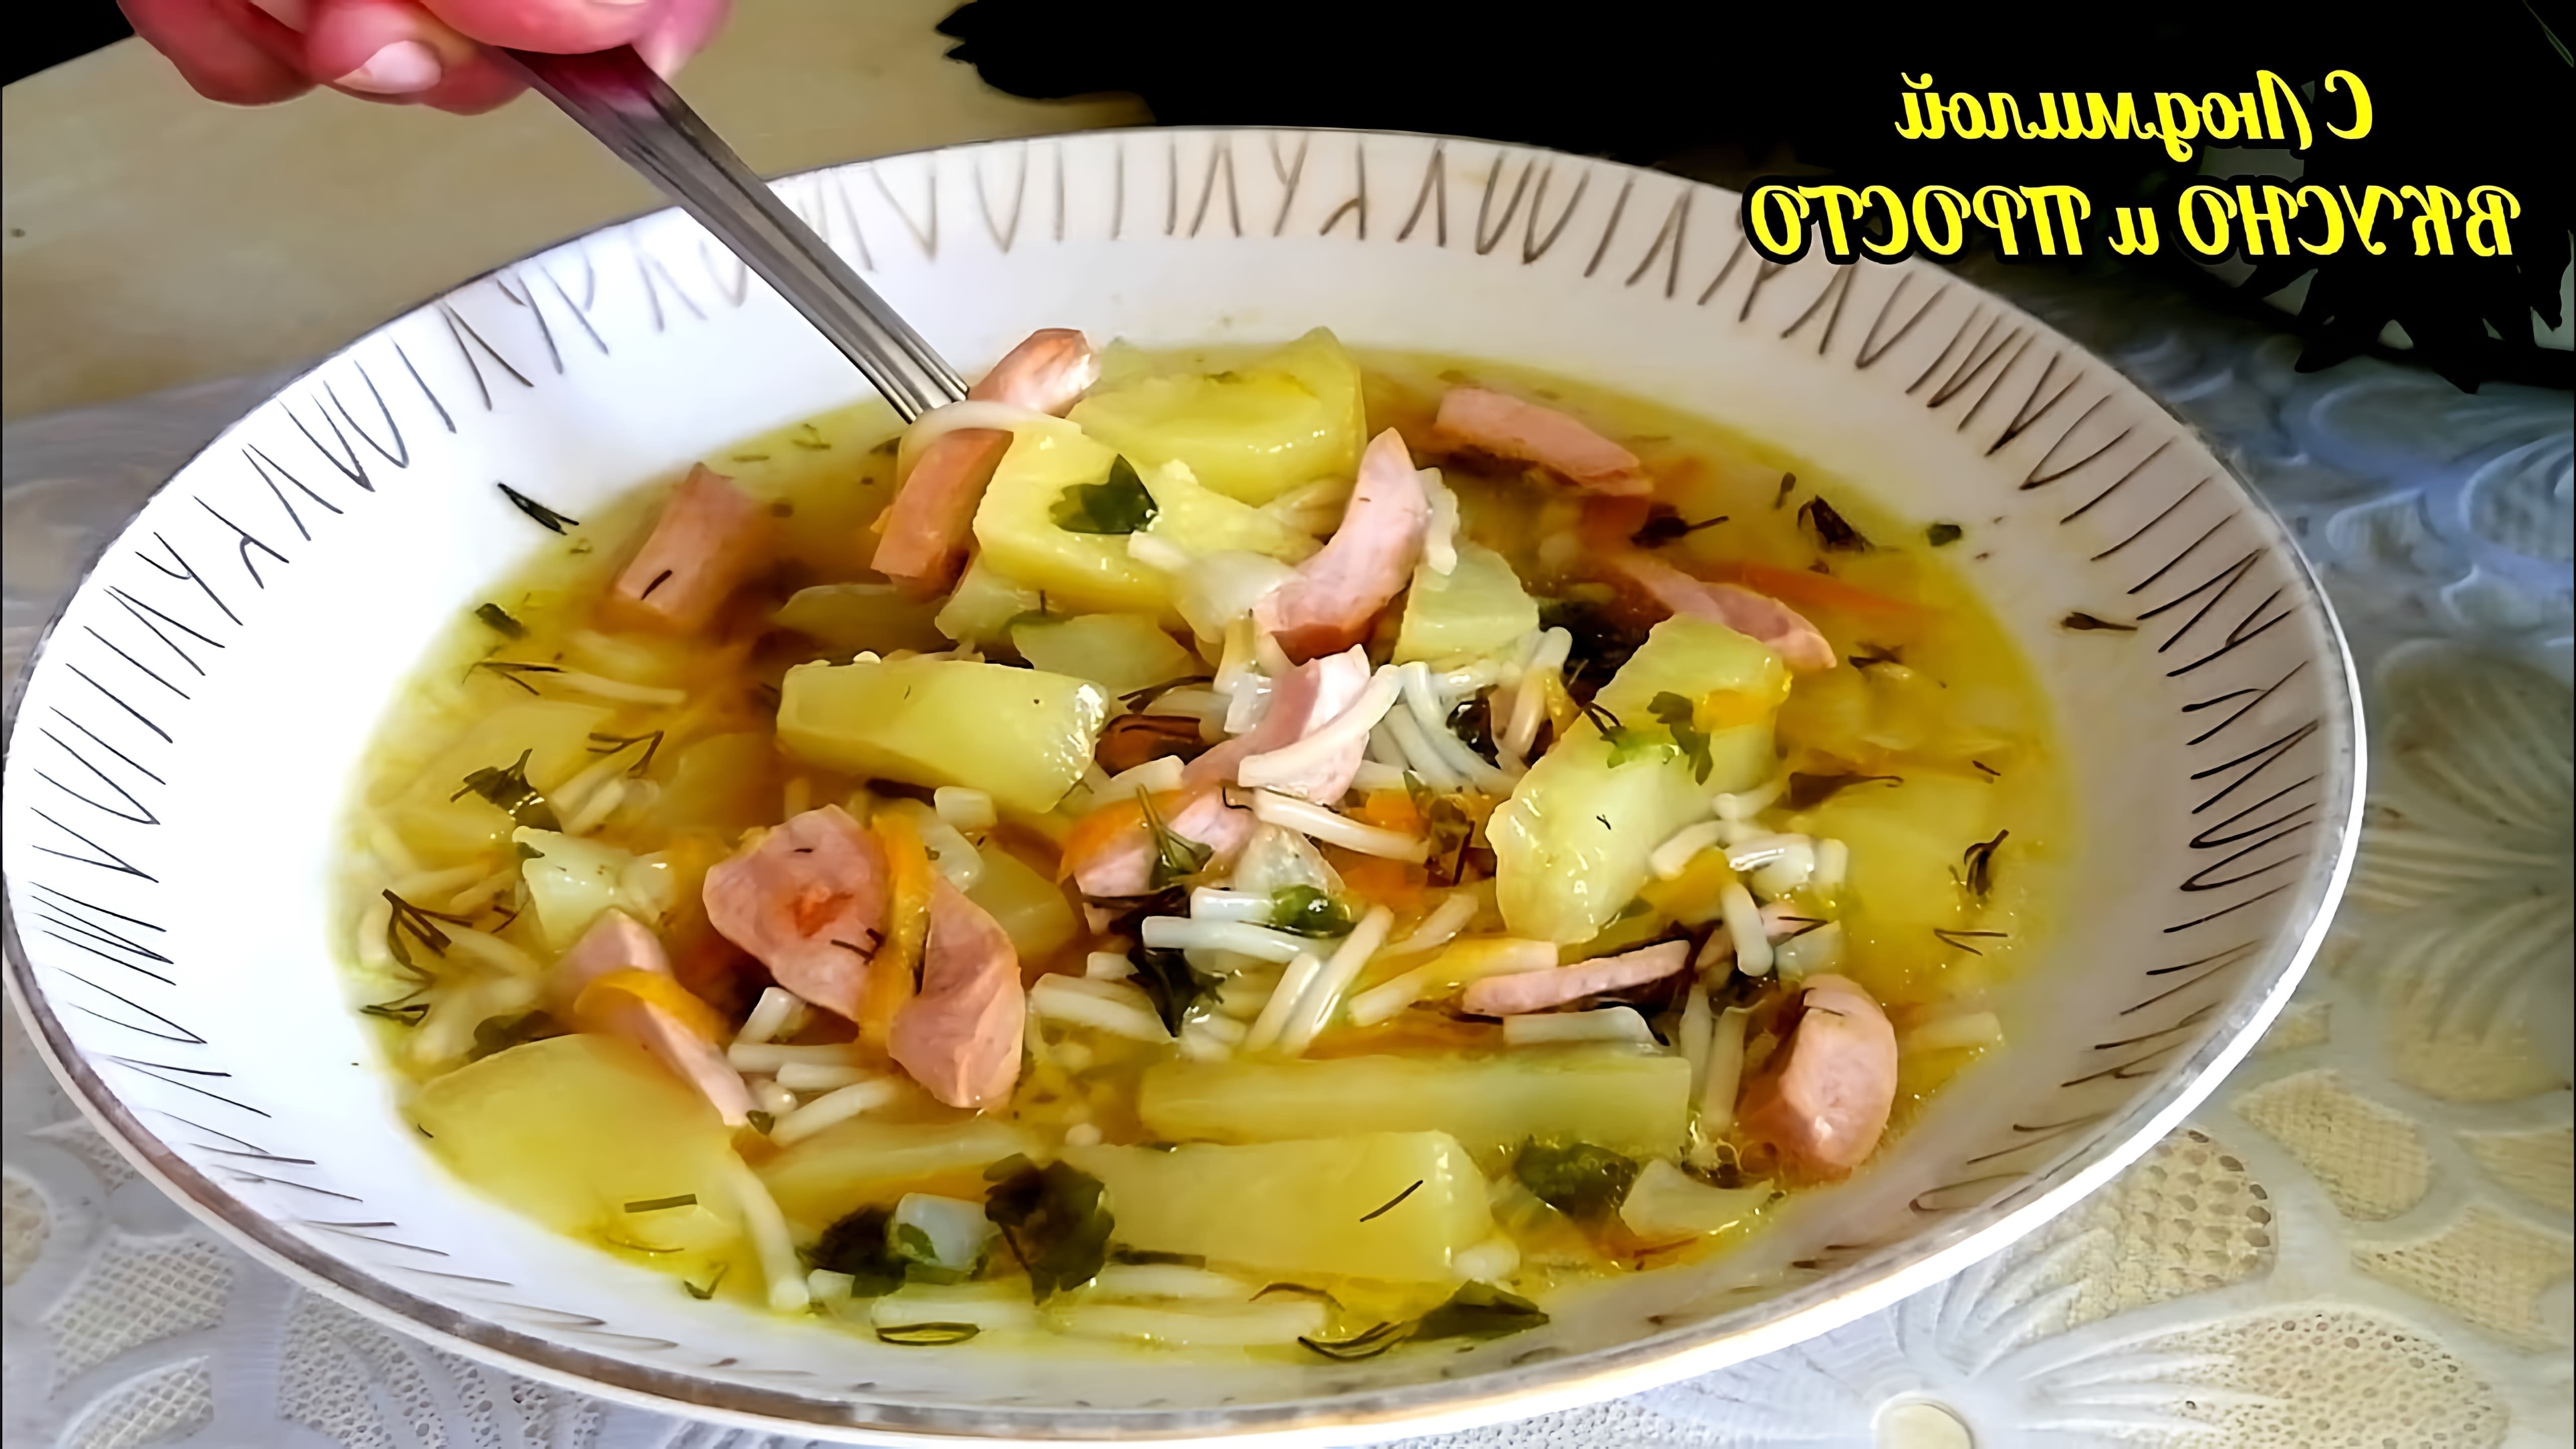 В этом видео демонстрируется рецепт простого и бюджетного супа с колбасой из советского детства